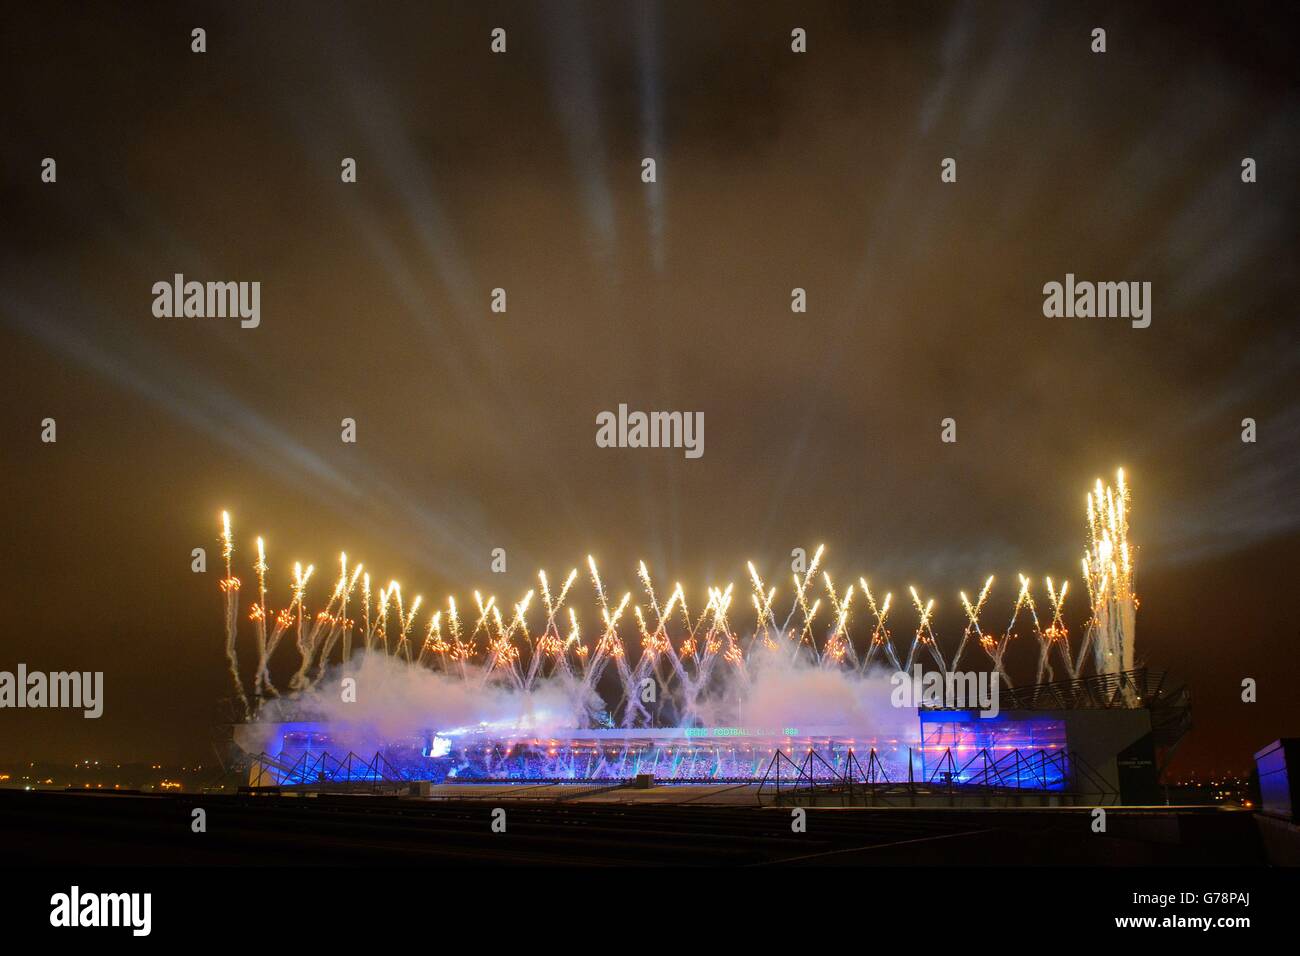 Während der Eröffnungszeremonie der Commonwealth Games 2014 erleuchtet ein Feuerwerk den Himmel über dem Celtic Park, vom Sir Chris Hoy Velodrome Dach aus gesehen. Stockfoto